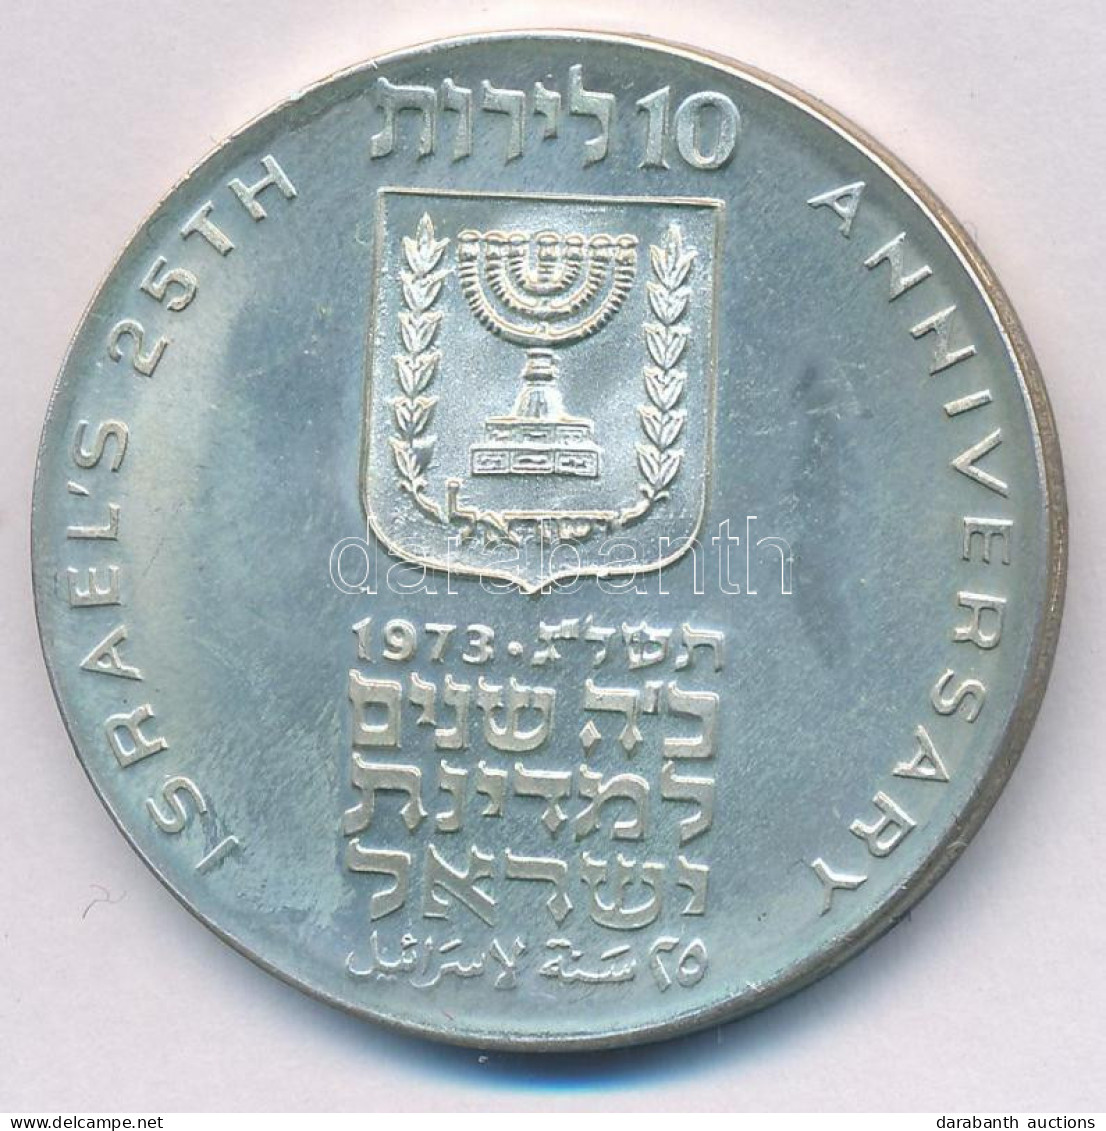 Izrael 1973. 10L Ag "A Függetlenség 25. évfordulója" Forgalomba Nem Került Emlékkiadás Dísztokban, Tanúsítvánnyal T:PP P - Ohne Zuordnung